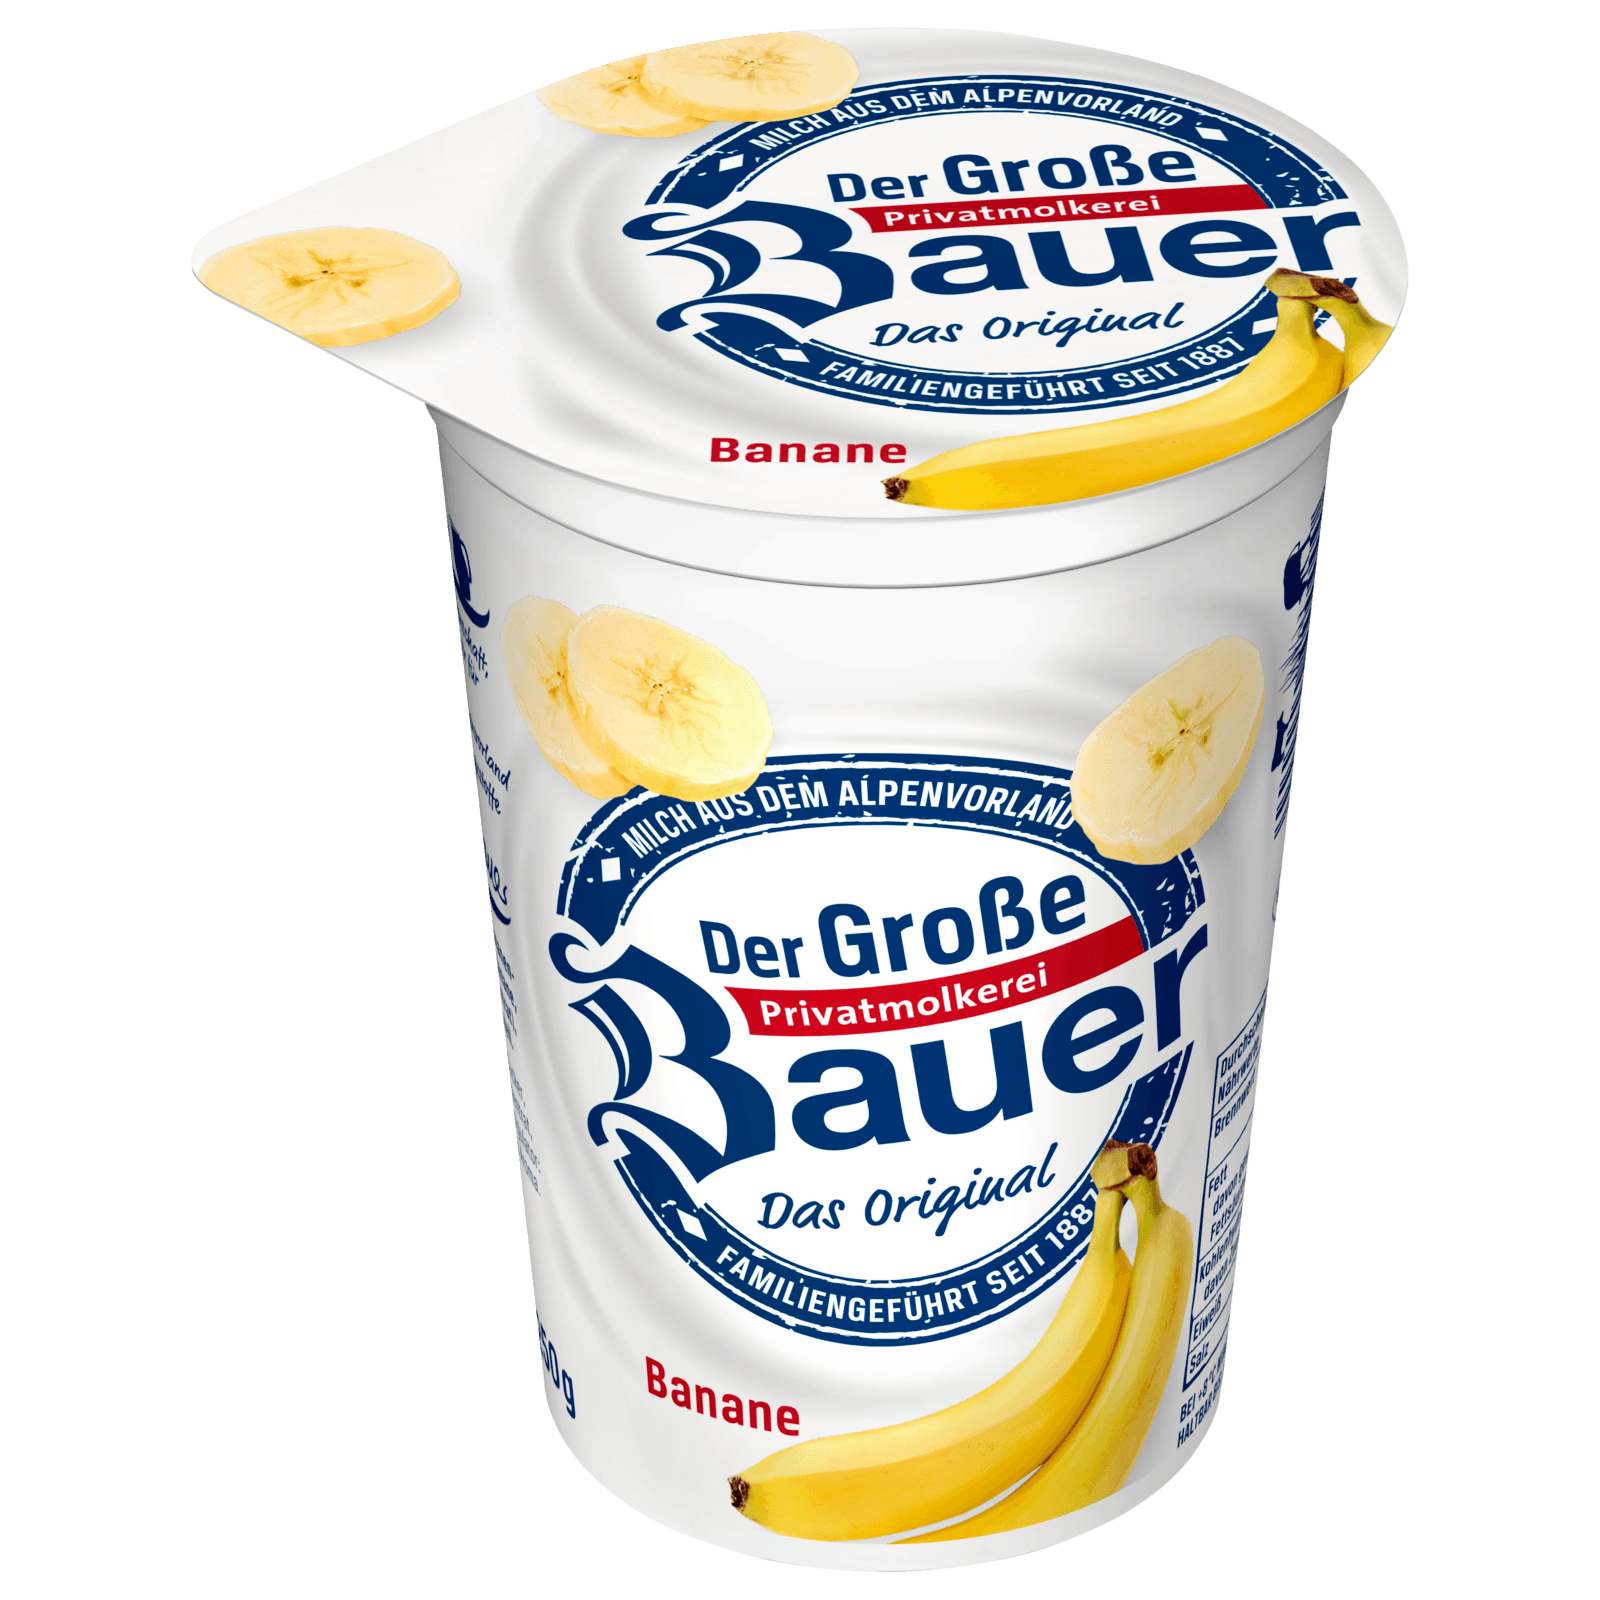 250g Banane online bei Fruchtjoghurt Bauer bestellen! REWE